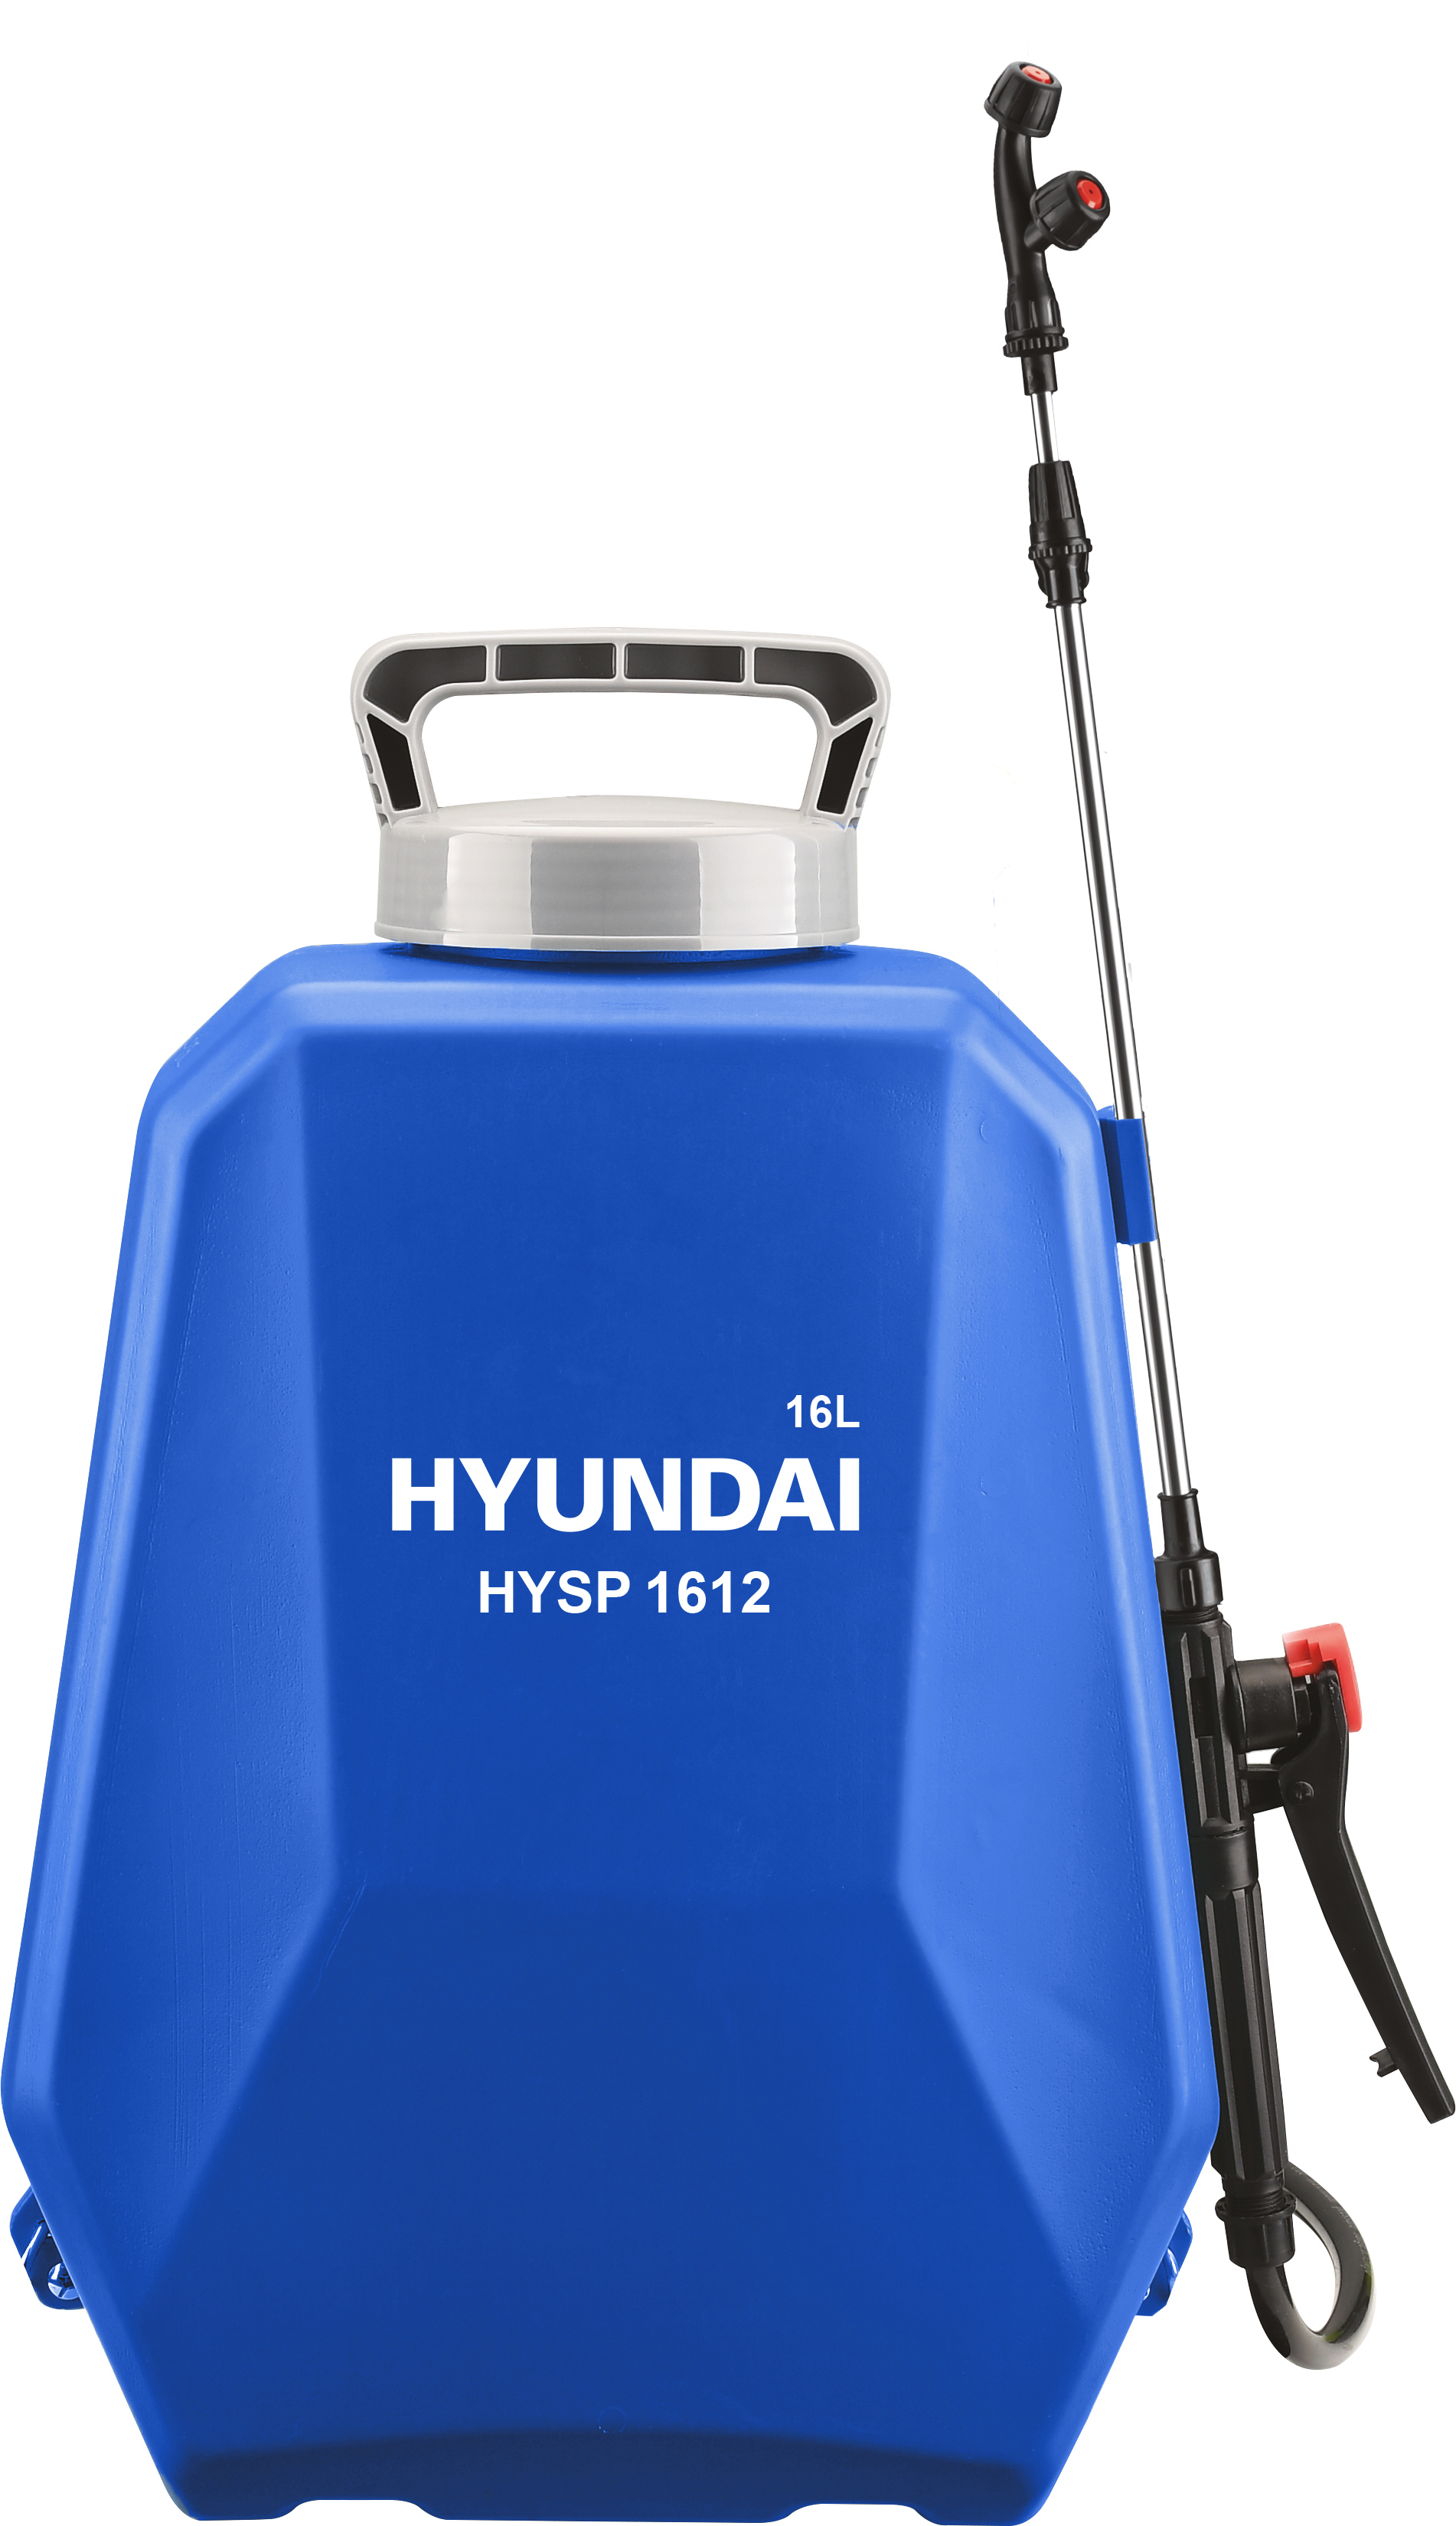 Аккумуляторный опрыскиватель Hyundai HYSP 1612 аккумуляторный опрыскиватель hyundai hysp 1612